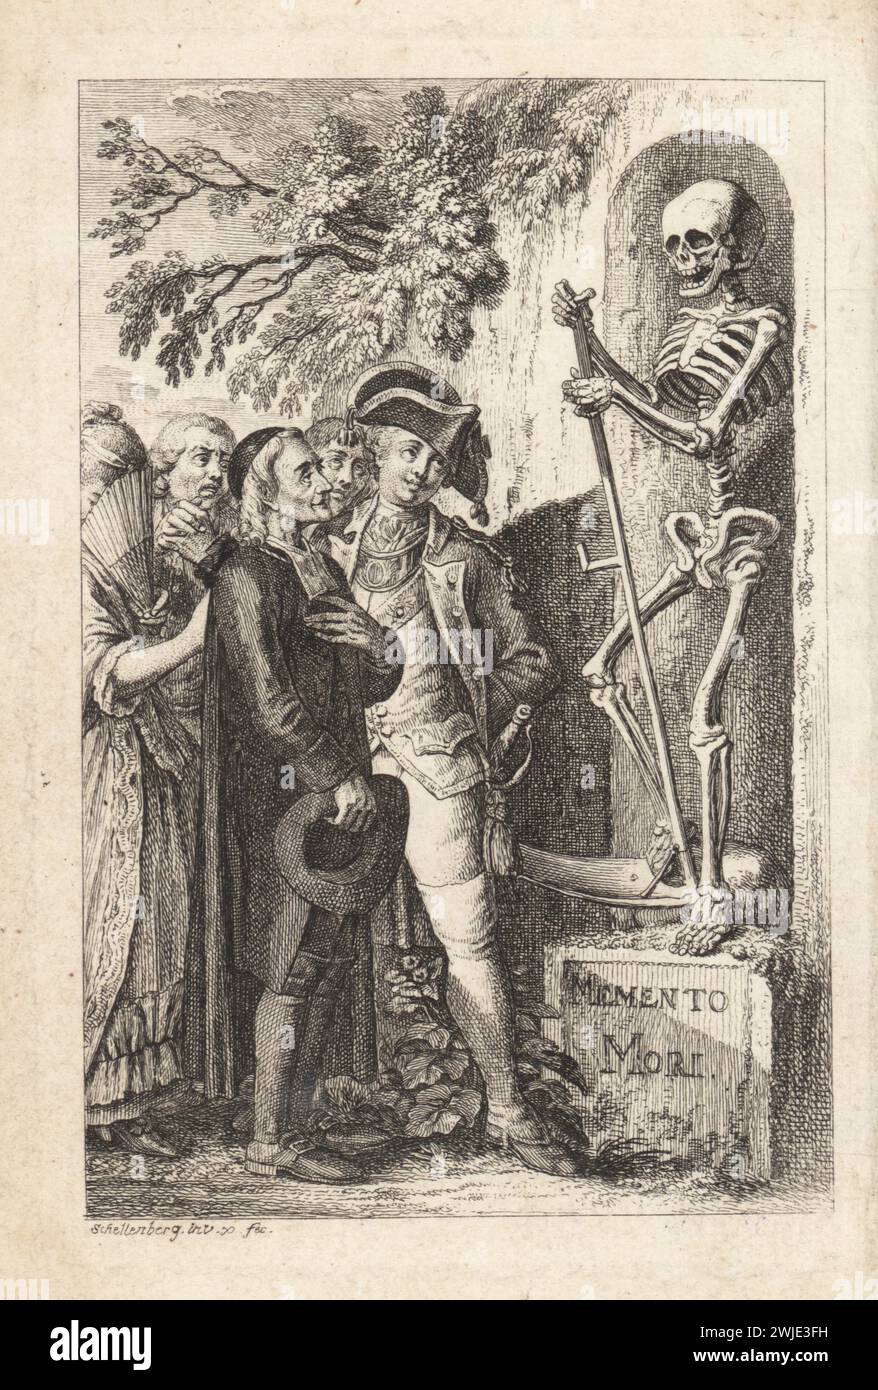 Uomini e donne guardano una statua del Grim Reaper, uno scheletro con falce, etichettato Memento Mori, XVIII secolo. Le figure includono un soldato in uniforme, un prete con cappello, una gentildonna con ventilatore, ecc. Incisione su lastra di rame disegnata e incisa da Johann Rudolf Schellenberg di Freund Heins Erscheinungen di Johan Karl Musaus in Holbeins Manier, (apparizioni di morte nella maniera di Holbein), Heinrich Steiner, Winterthur, 1785. Foto Stock